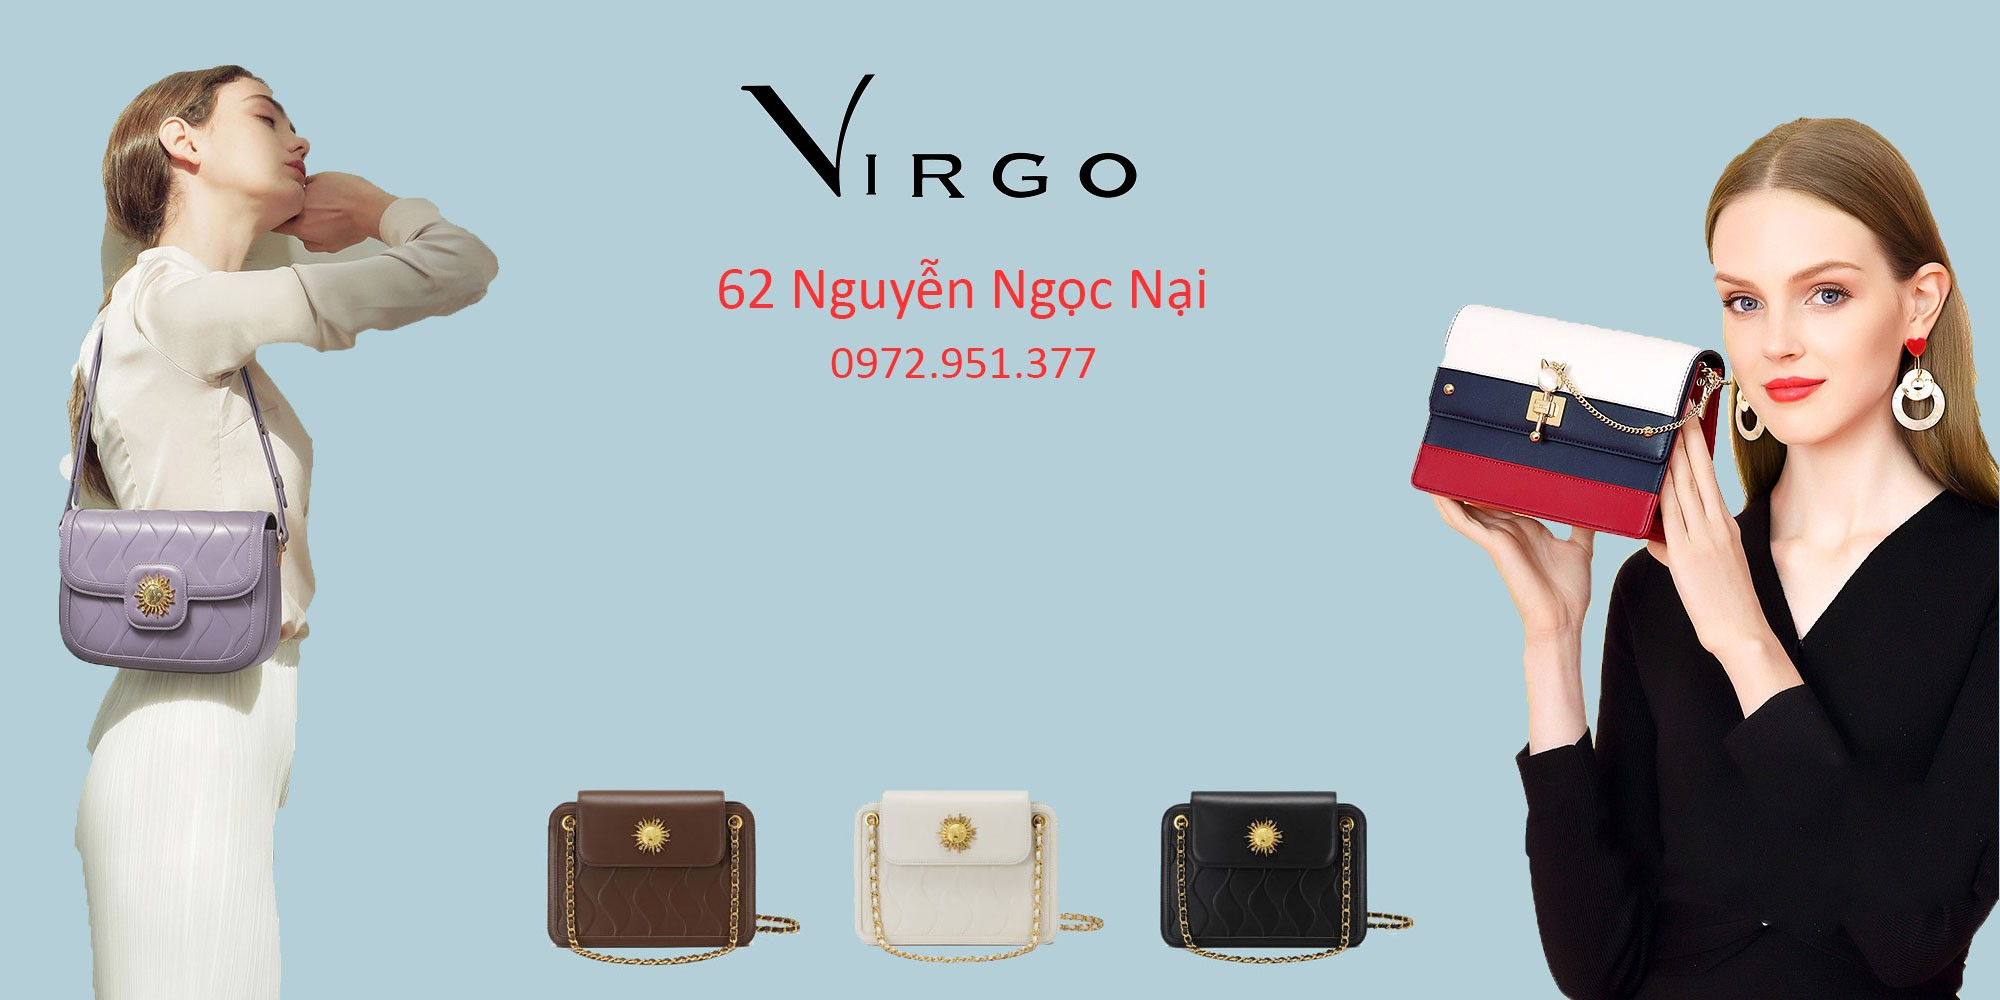 Cửa hàng Virgo